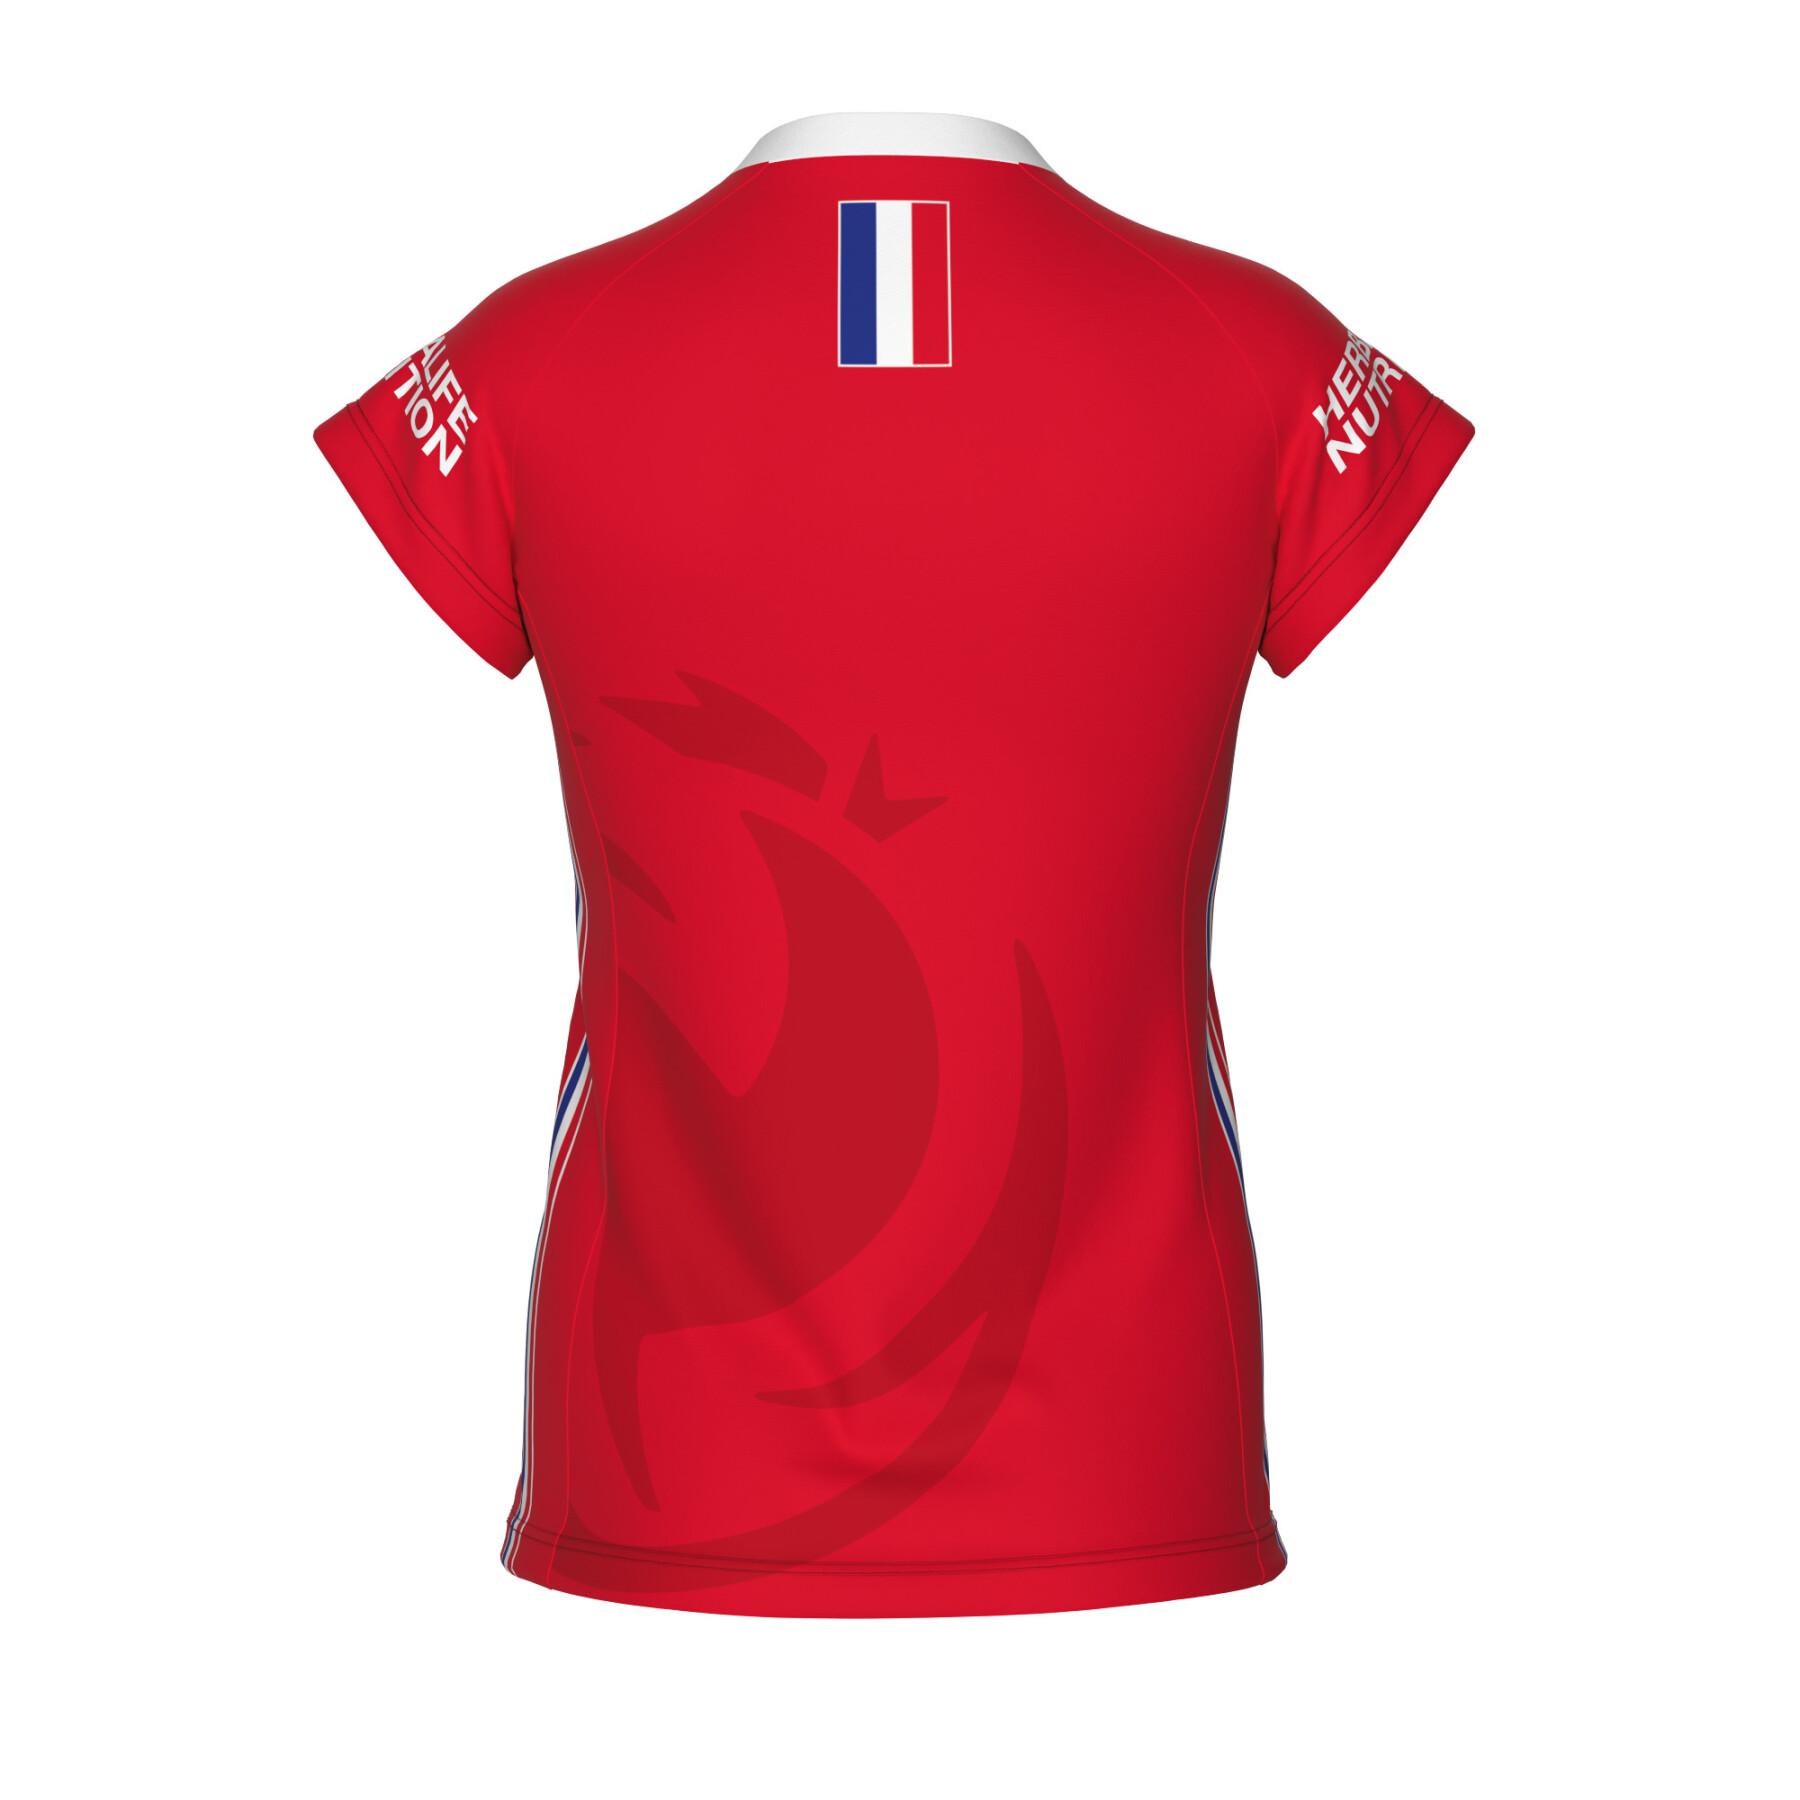 Women's third jersey France 2022